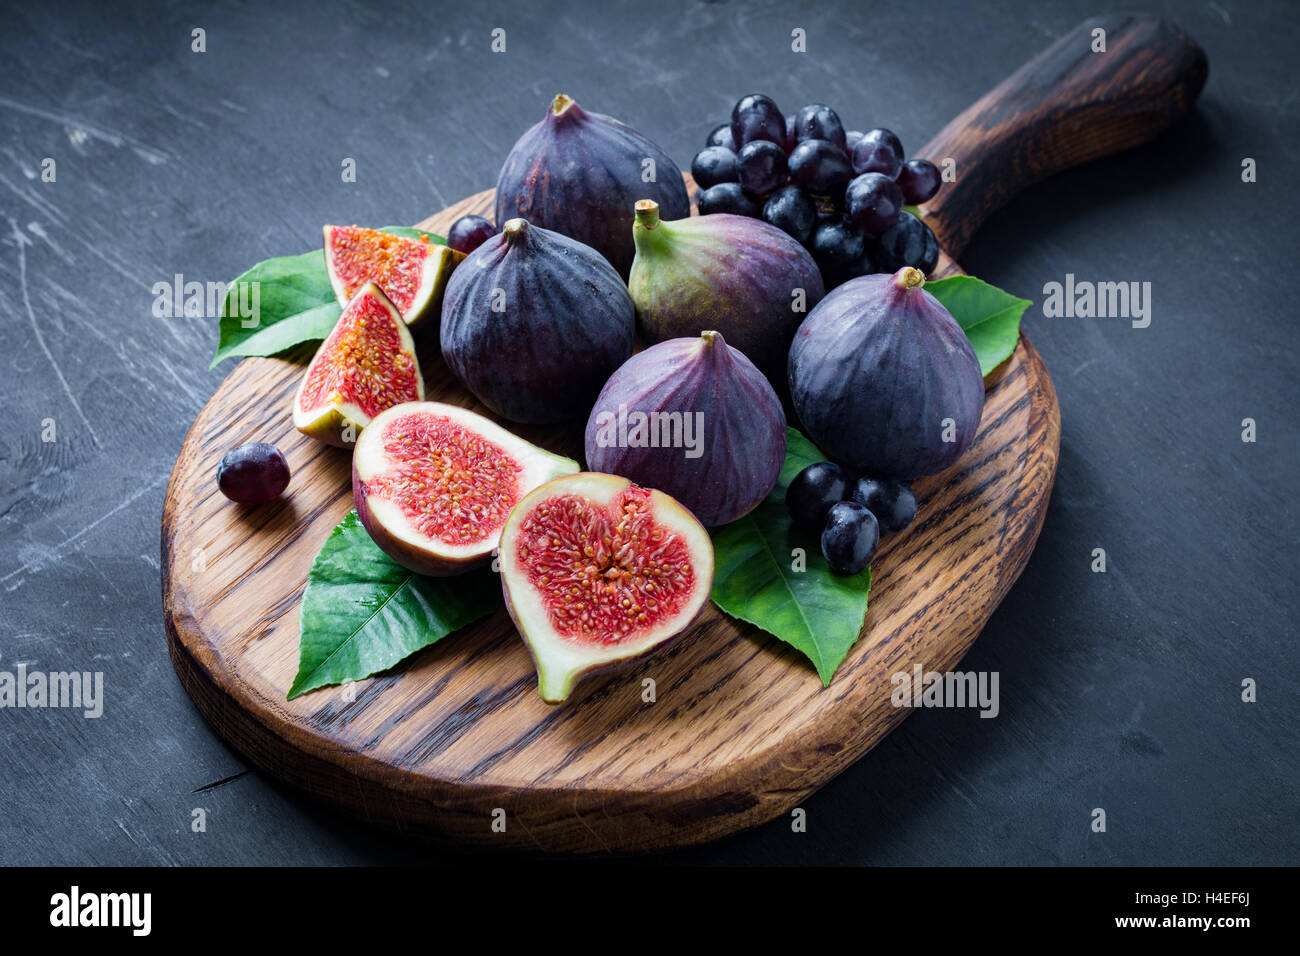 Un piatto di frutta fresca: fichi e uva nera "Isabella" sul tagliere di legno. Posizione orizzontale Foto Stock